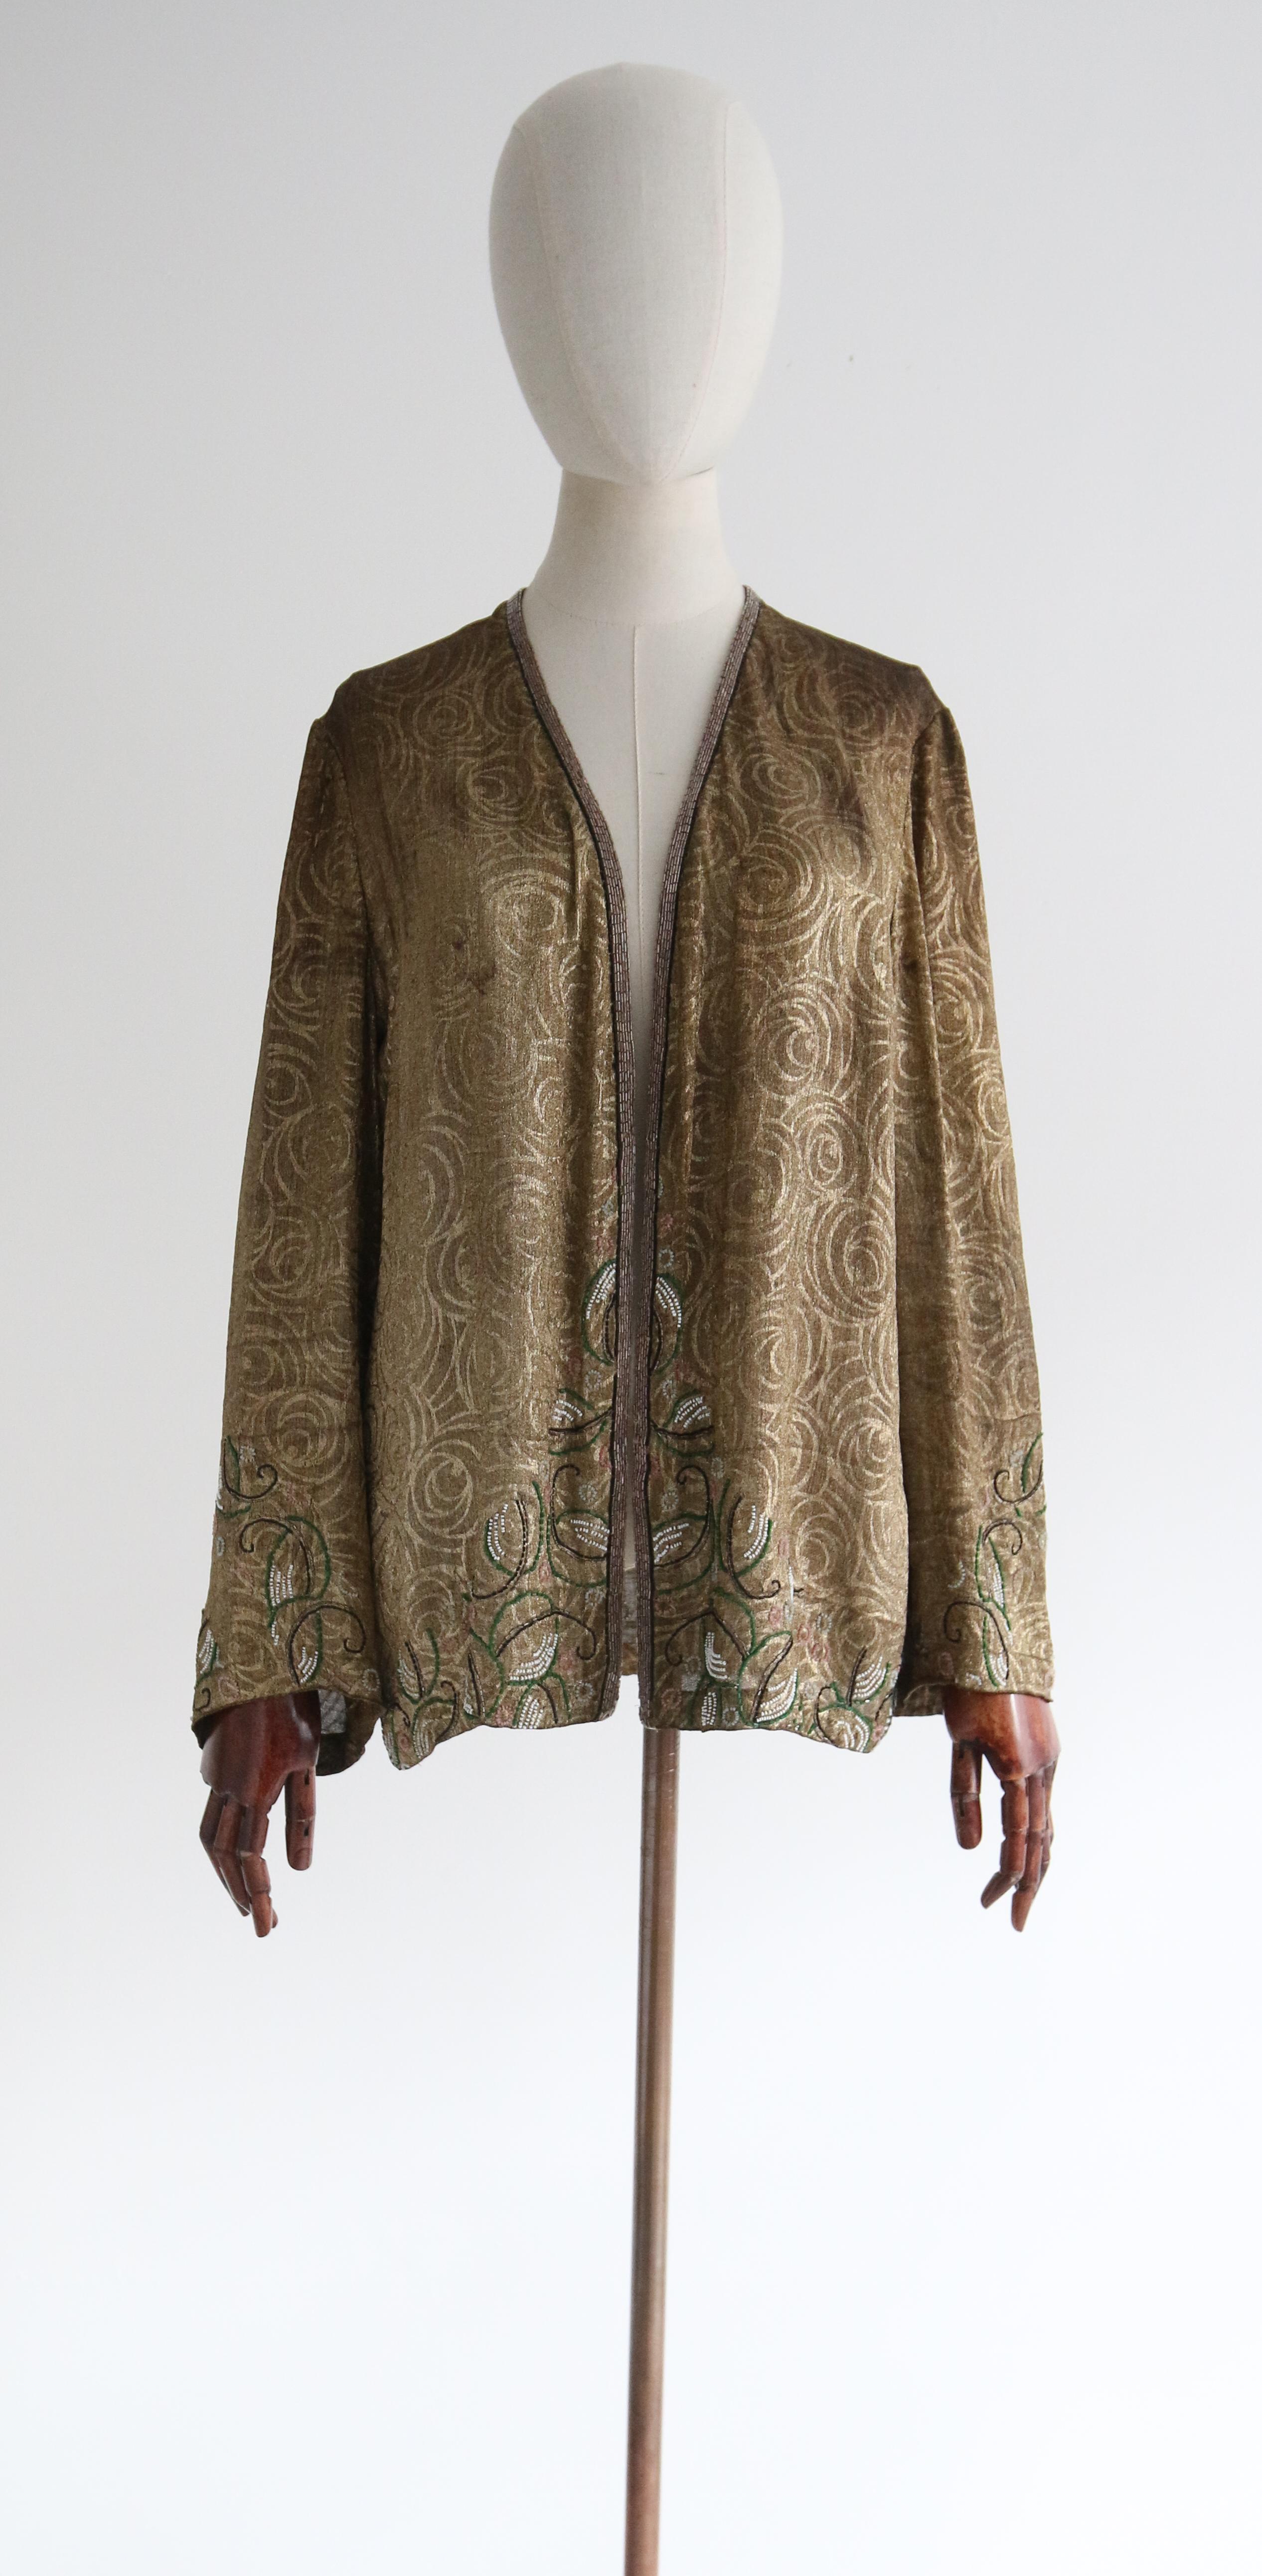 Diese wunderschöne Jacke aus den 1920er Jahren mit opulenten, originellen Details ist genau das richtige Stück, um Ihrer Garderobe einen Hauch von Eleganz zu verleihen.  

Der offene Ausschnitt wird durch einen kantigen Schnitt hervorgehoben, der